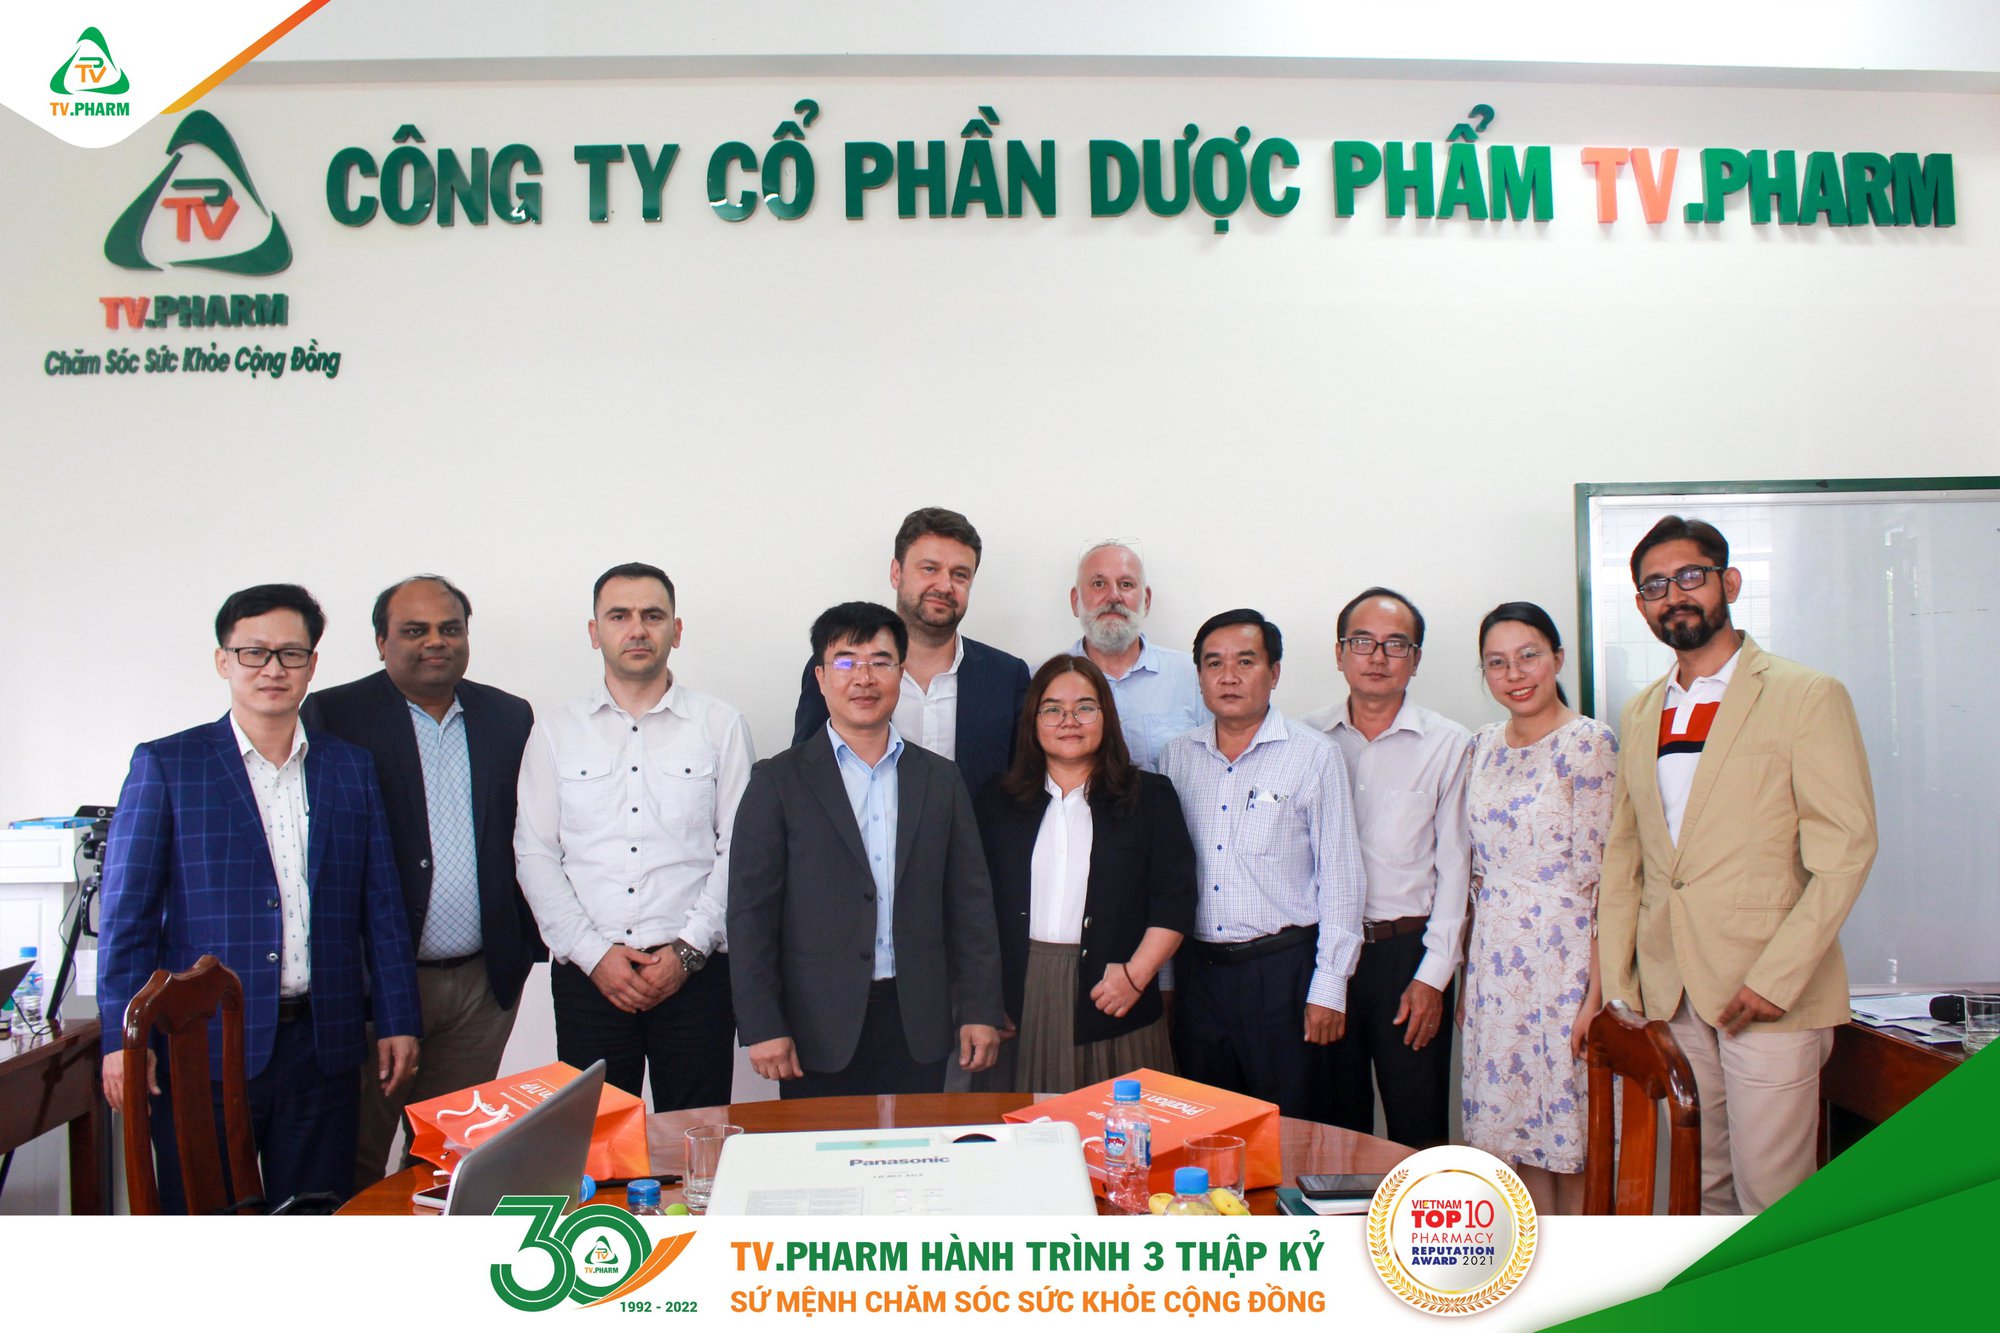 TV.PHARM đã có buổi gặp gỡ với các đối tác trong và ngoài ngước về việc xây dựng Cụm Công nghiệp Dược phẩm Công nghệ cao TV.PHARM-1